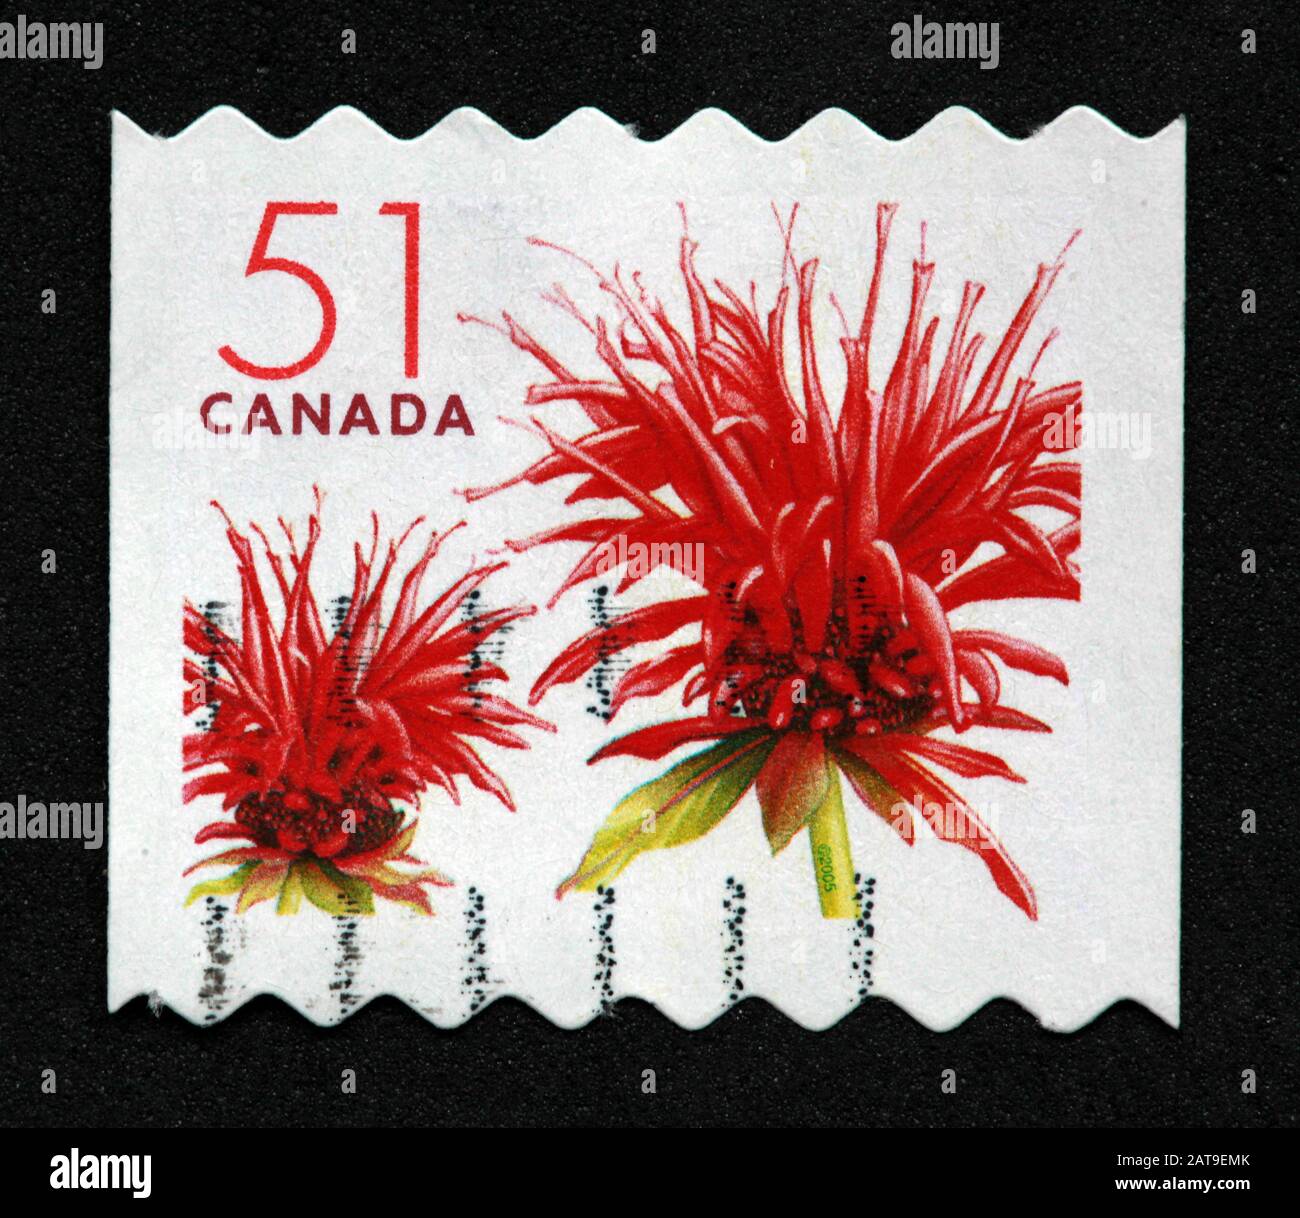 Timbre canadien, Timbre Canada, postes Canada, timbre utilisé, Canada, 51 cents, 51 cents, fleur rouge, fleur de bergamote rouge Banque D'Images